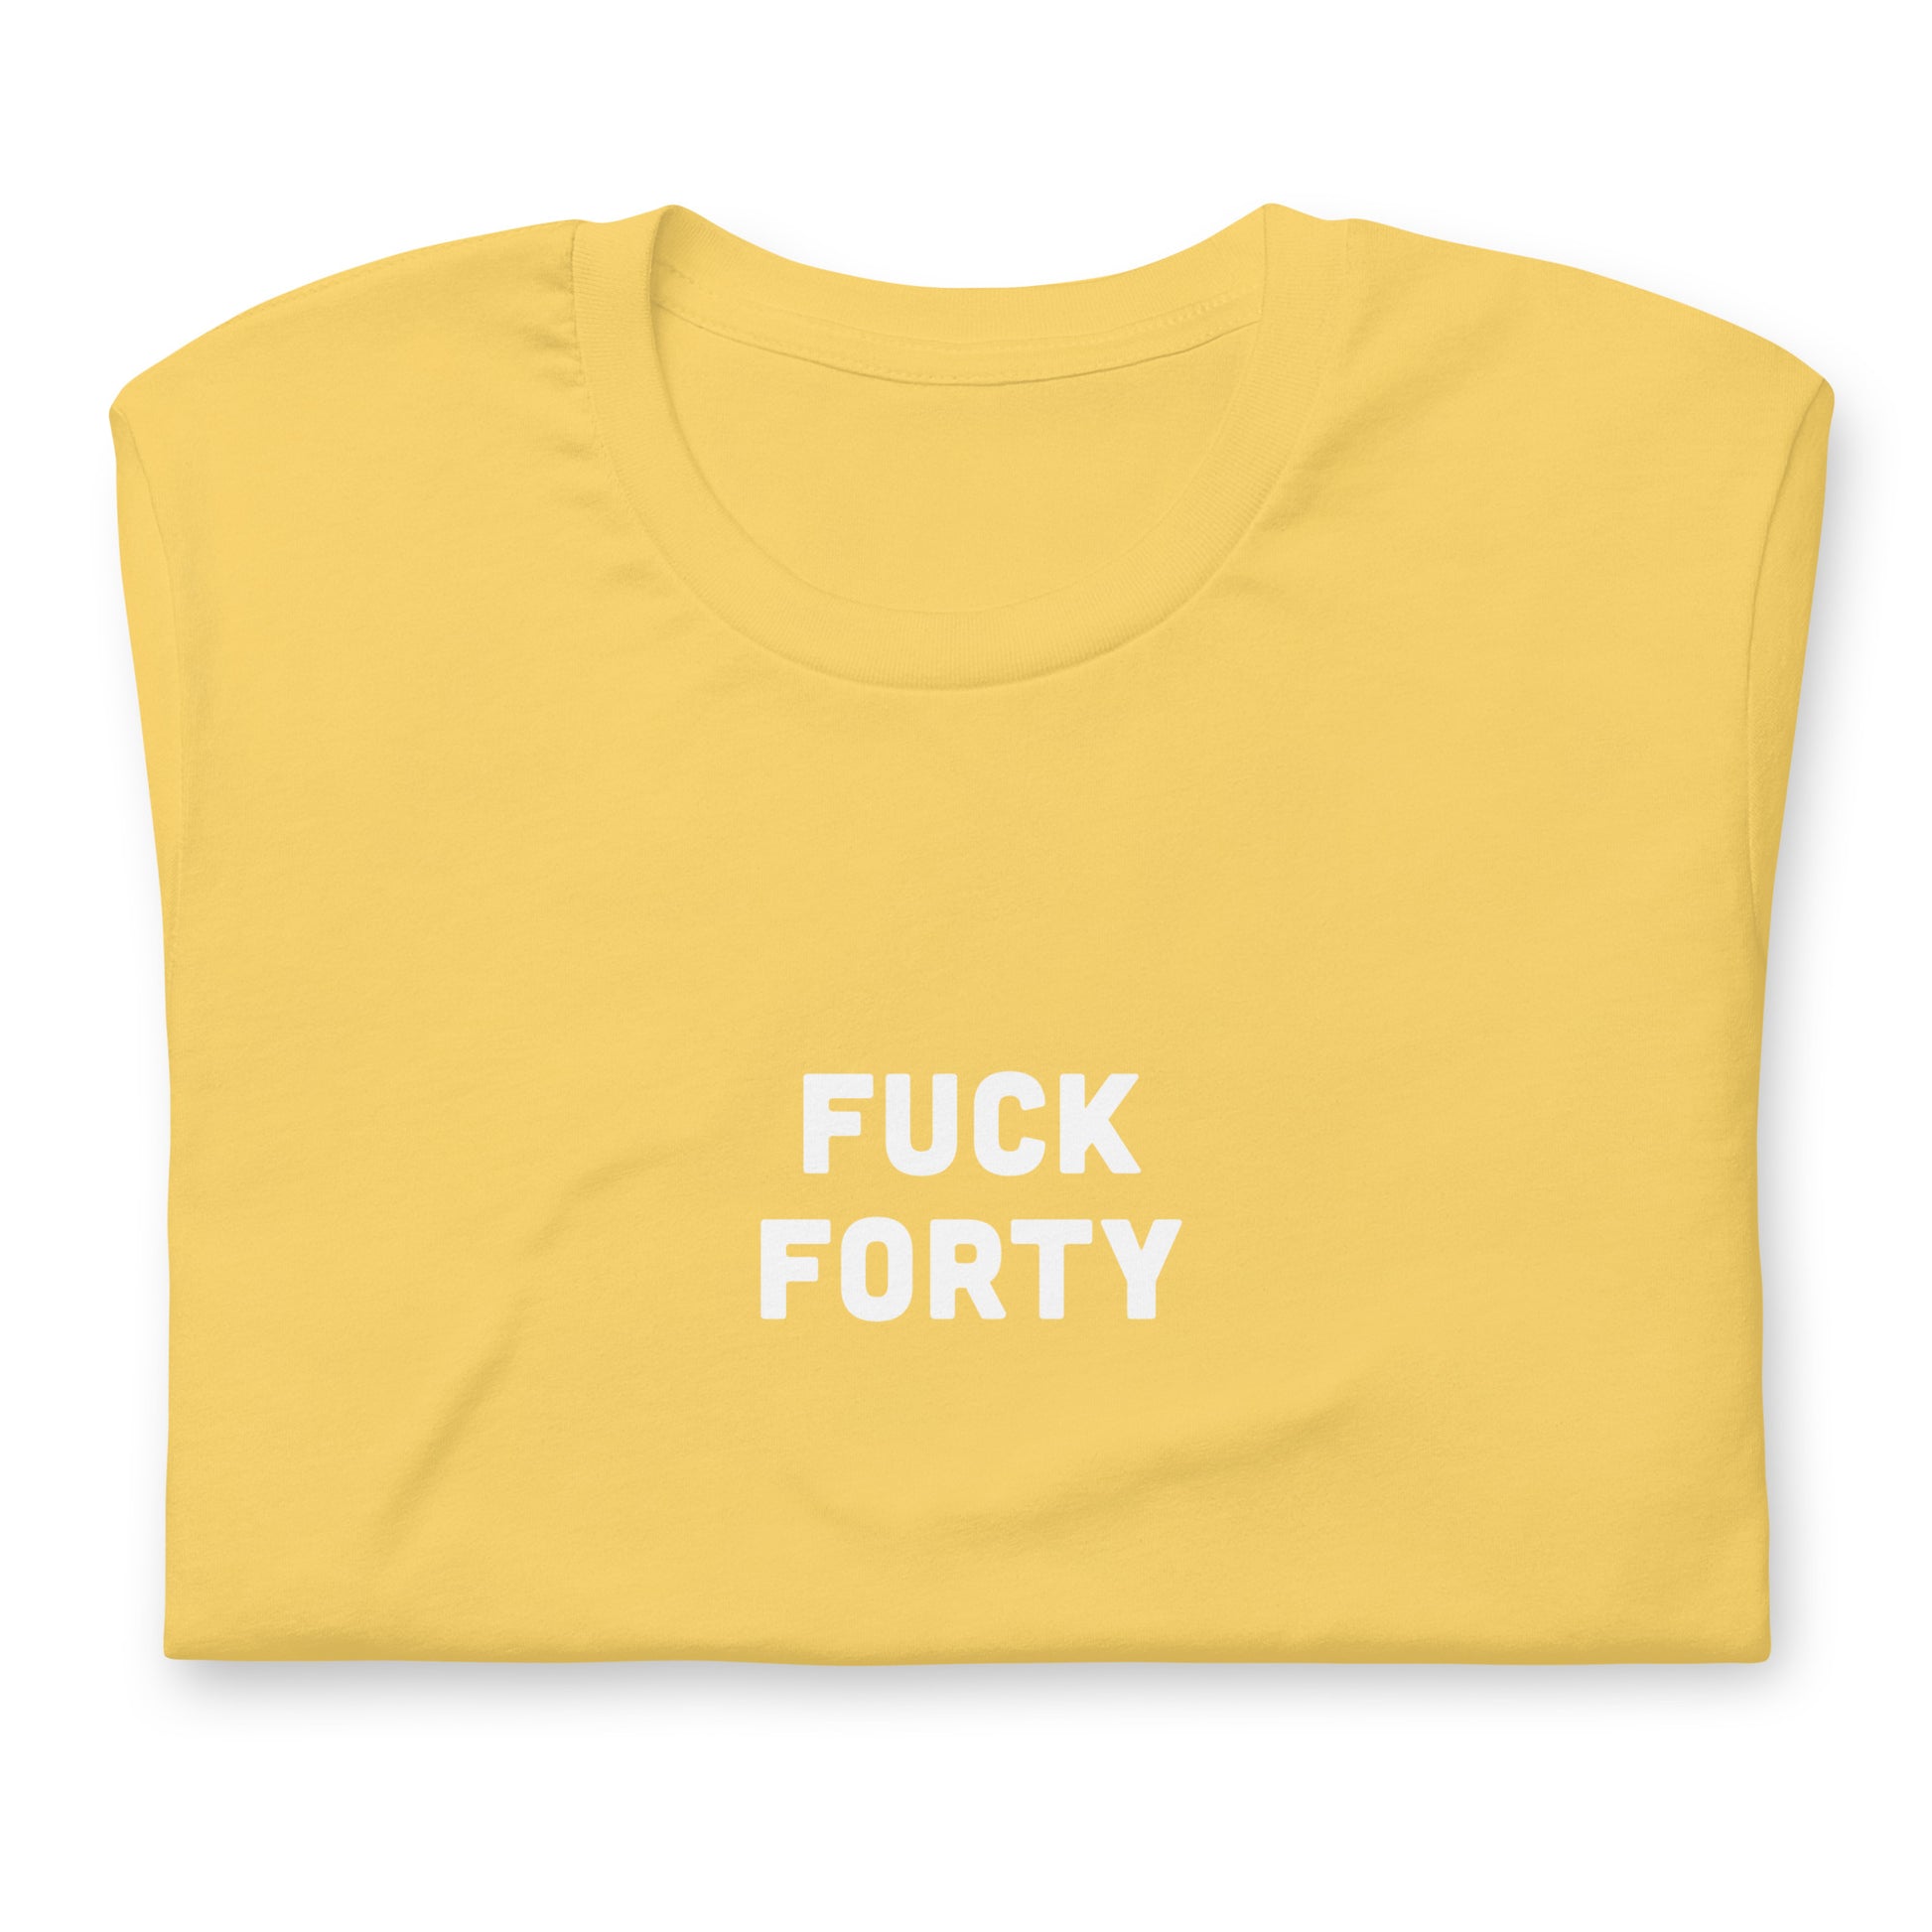 Fuck 40 T-Shirt Size XL Color Asphalt